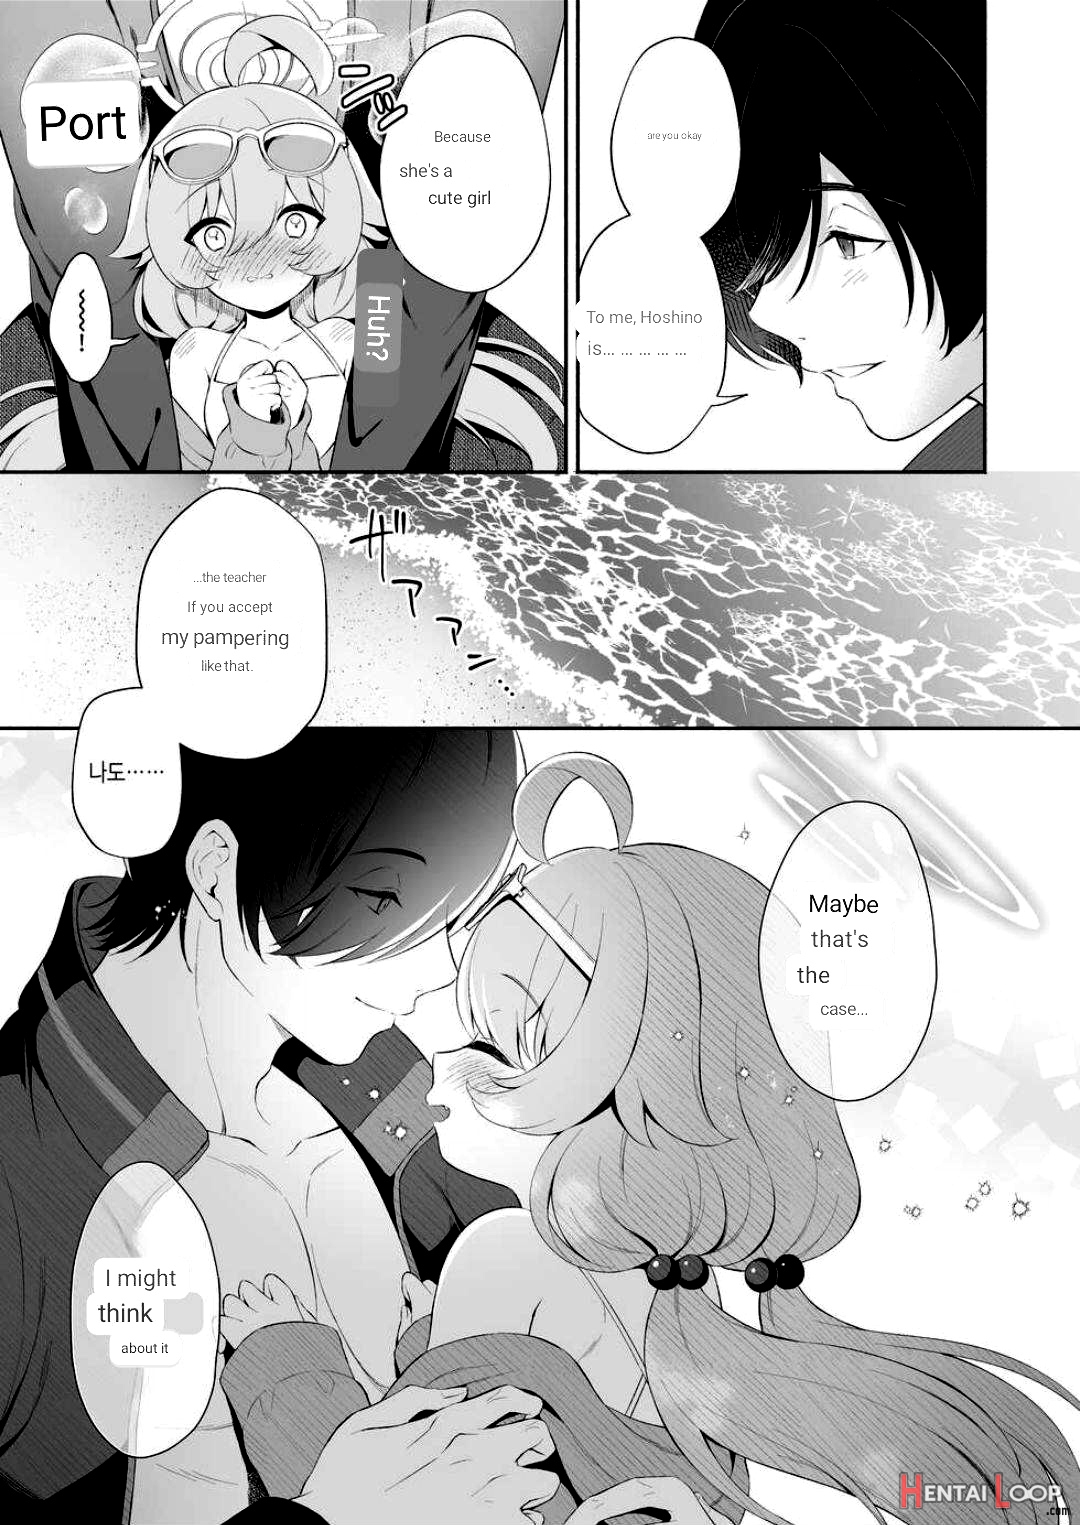 Torokeru Hoshino page 5